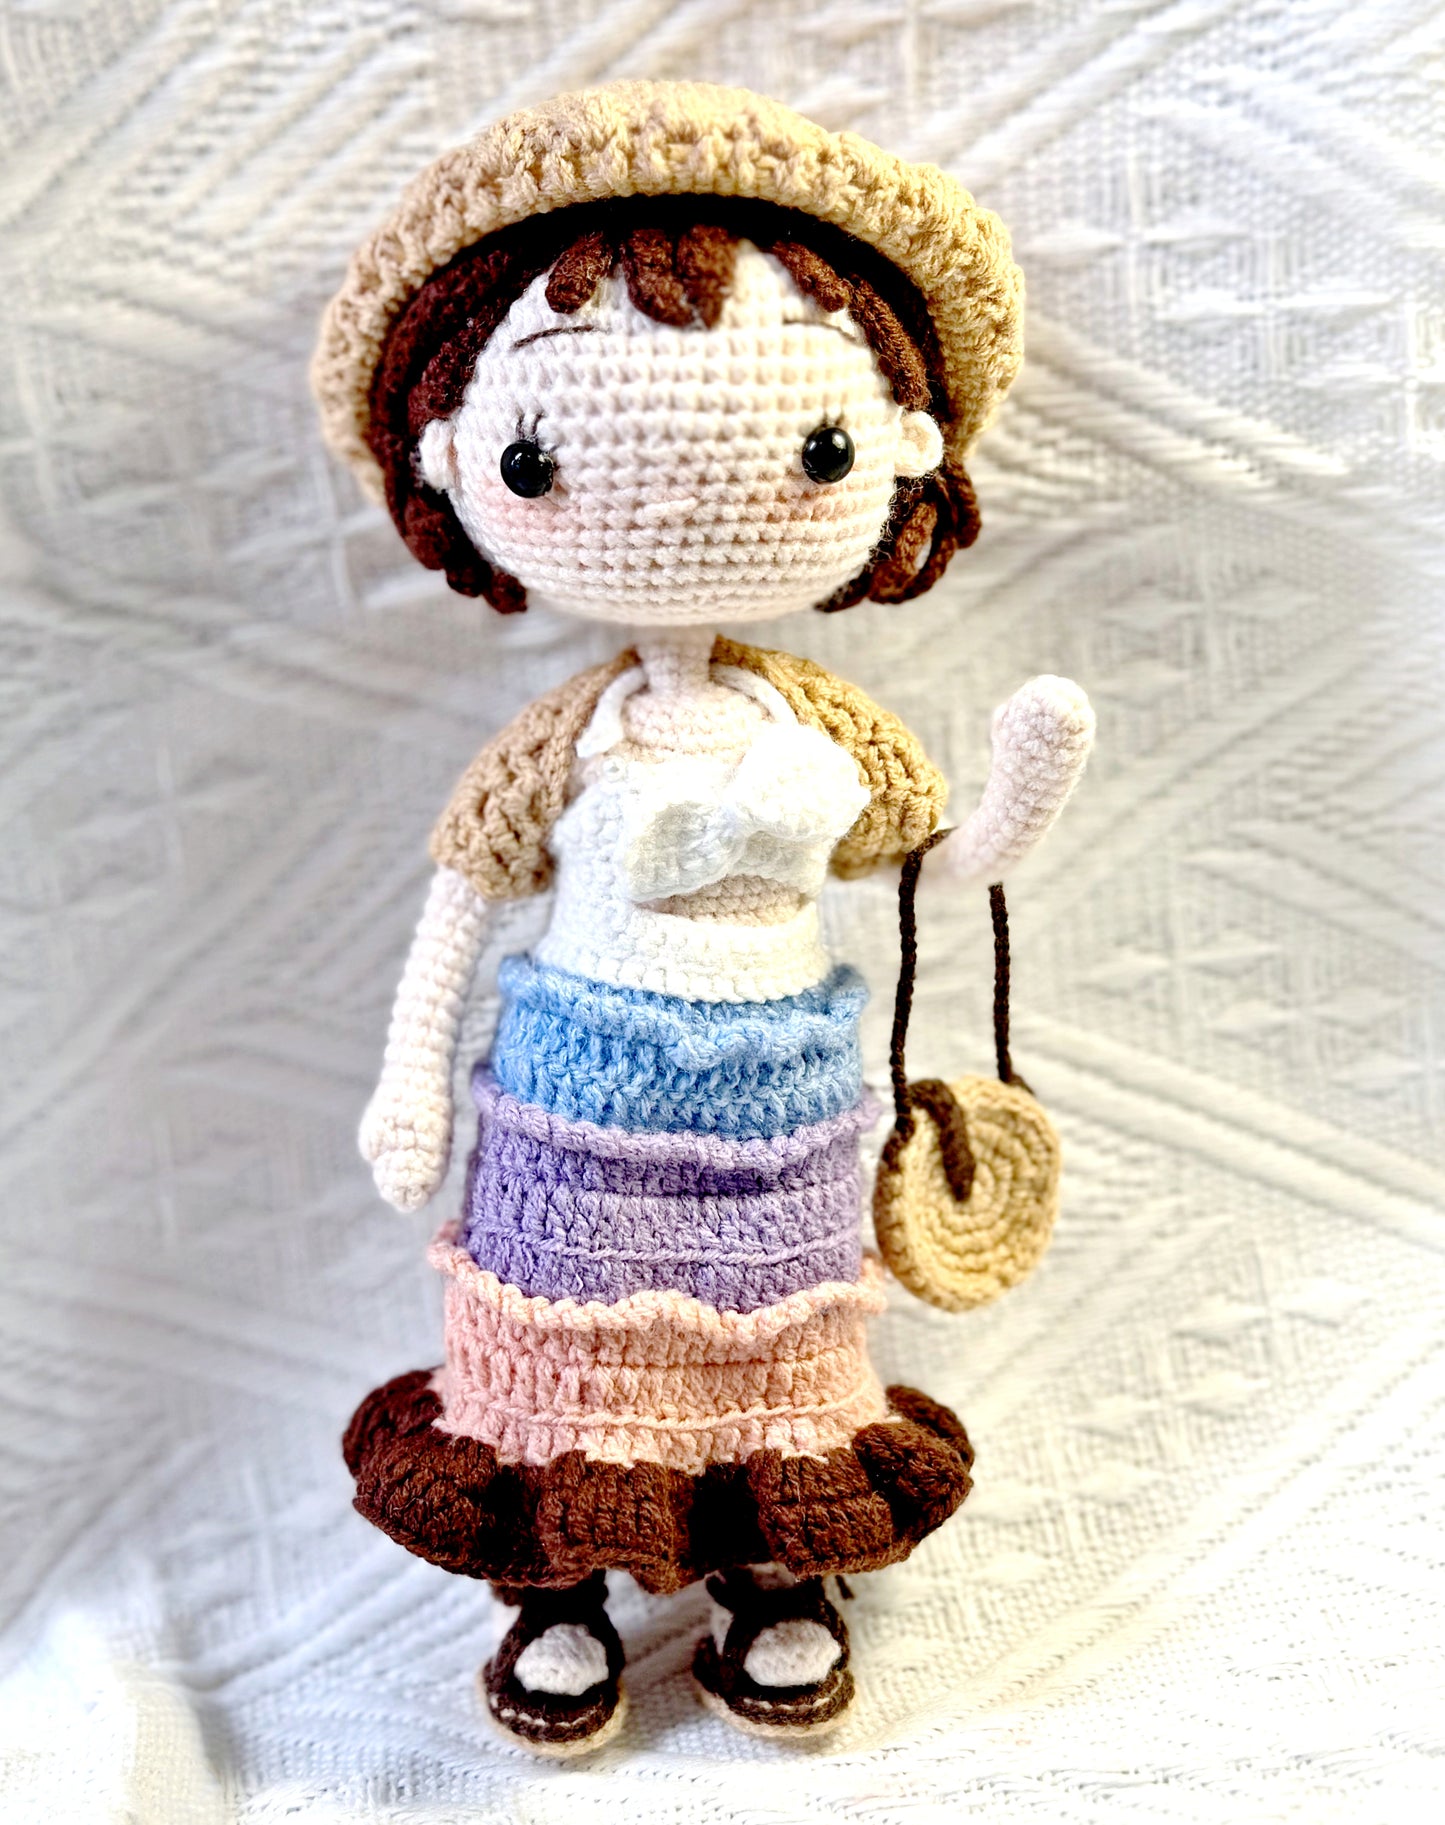 Handmade crochet girl doll ornaments for home decor